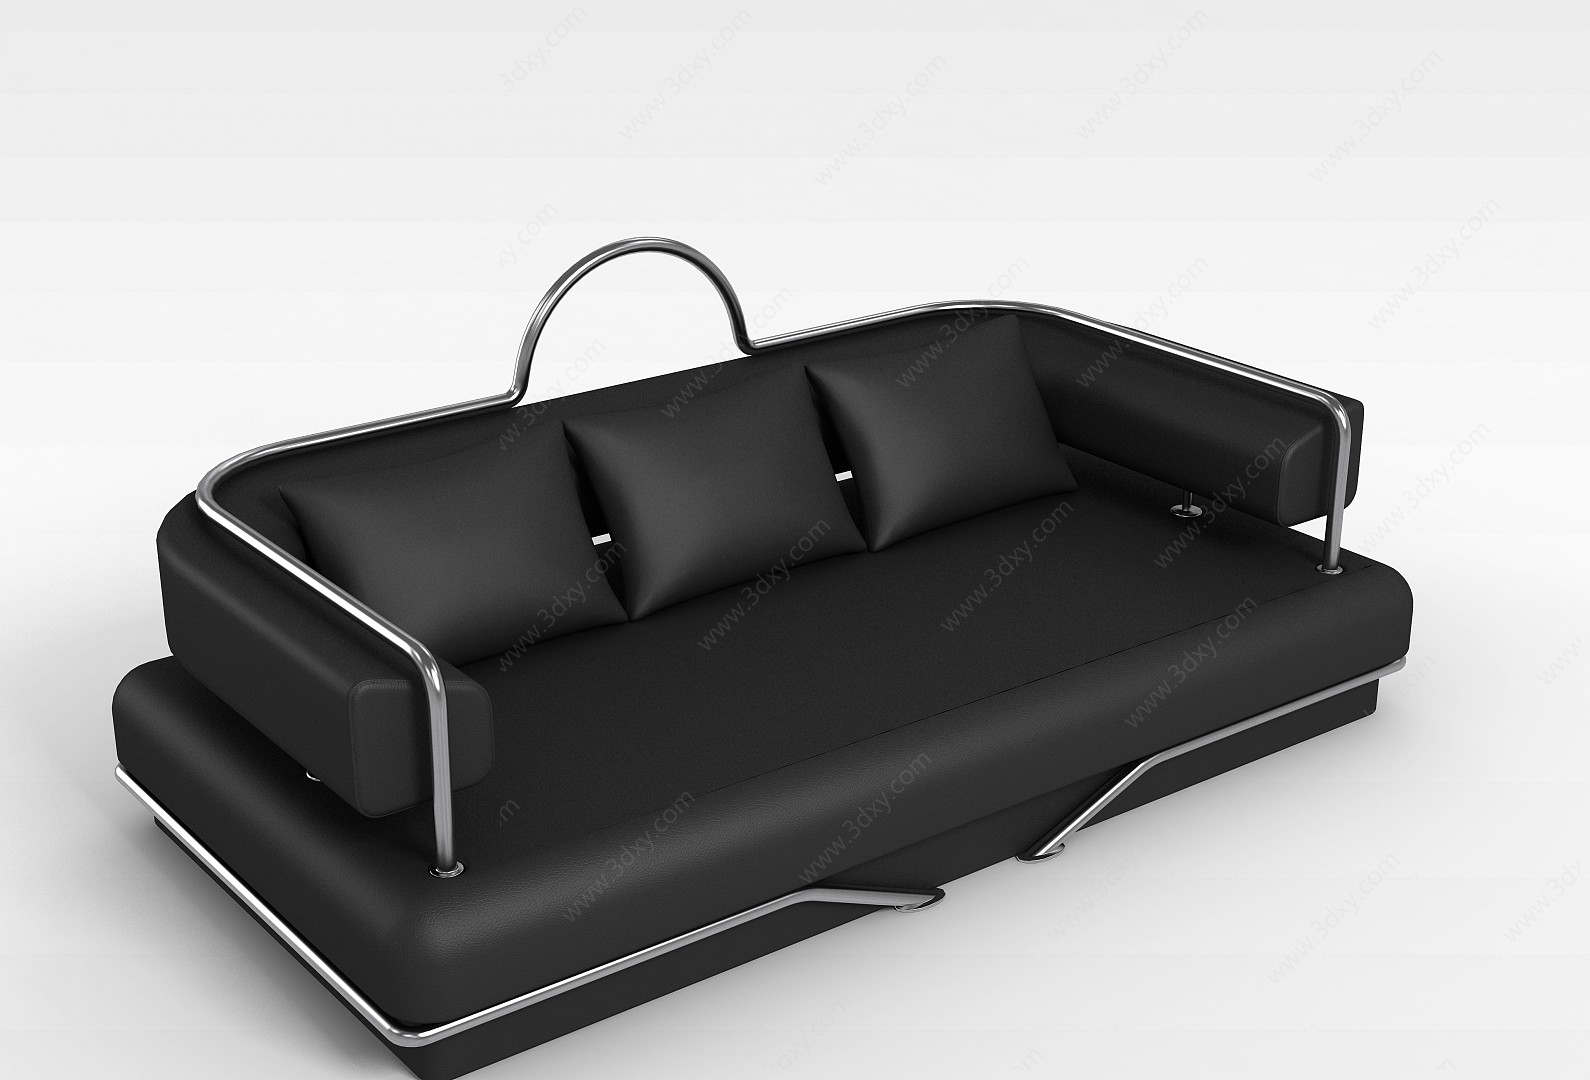 高档沙发3D模型